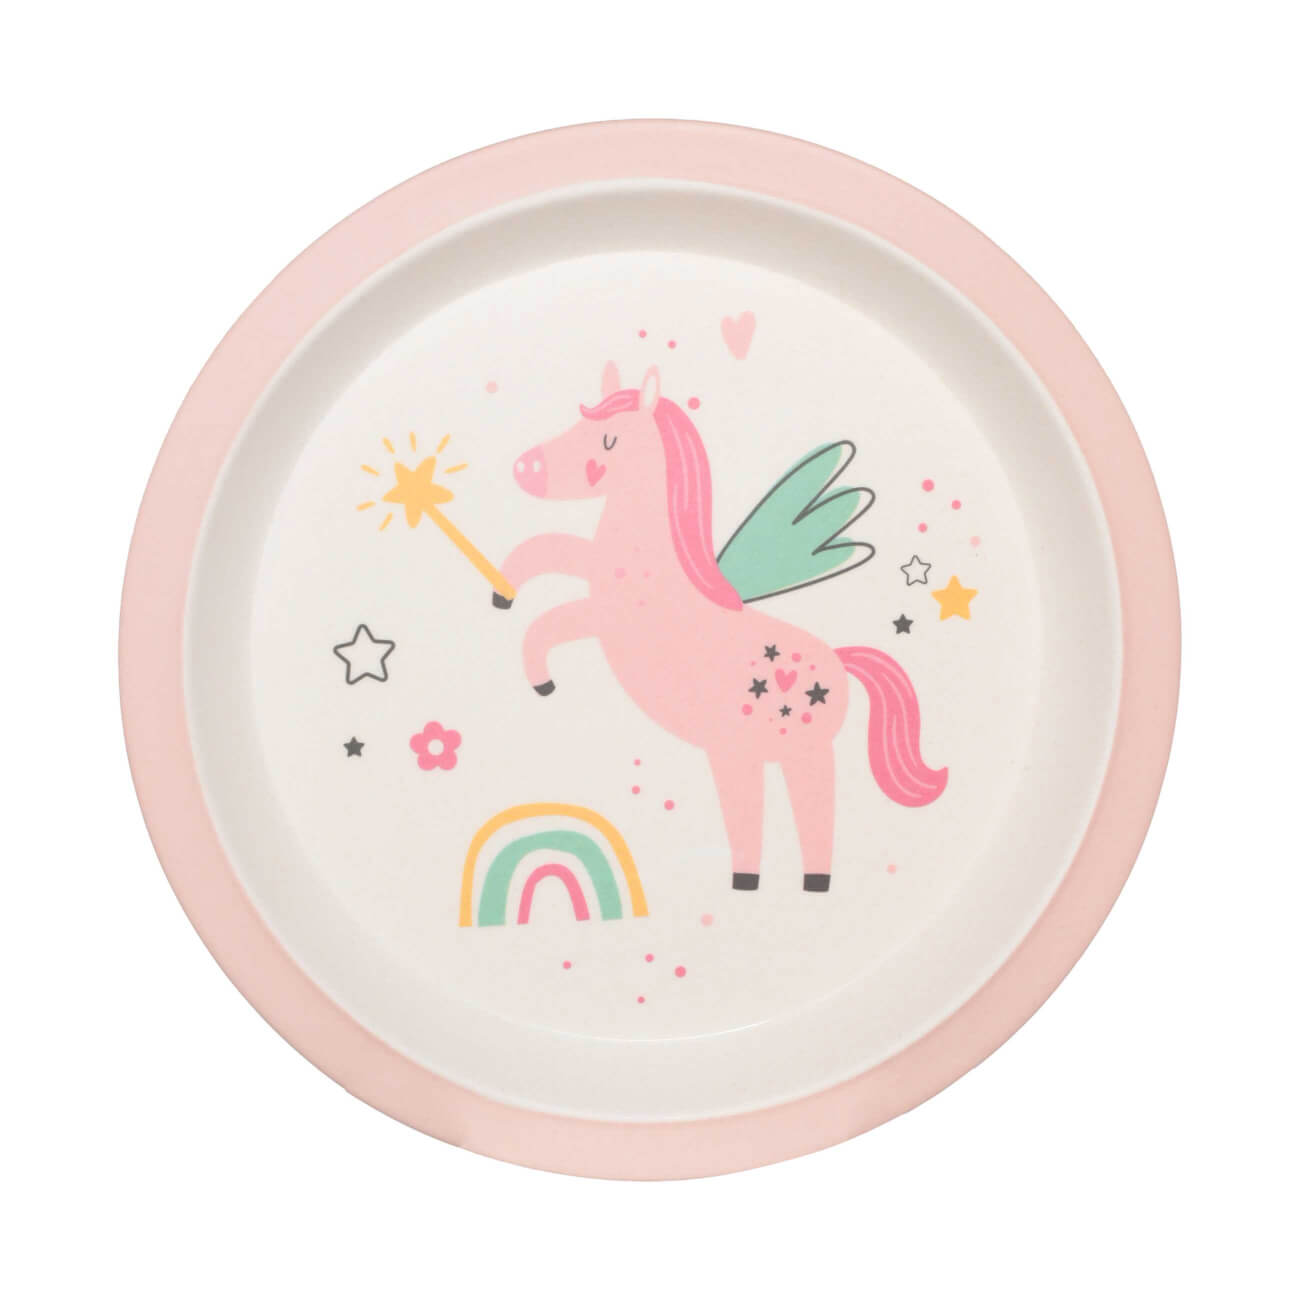 Тарелка закусочная, детская, 21 см, бамбук, розовая, Единорог и радуга, Unicorn тарелка детская из бамбука